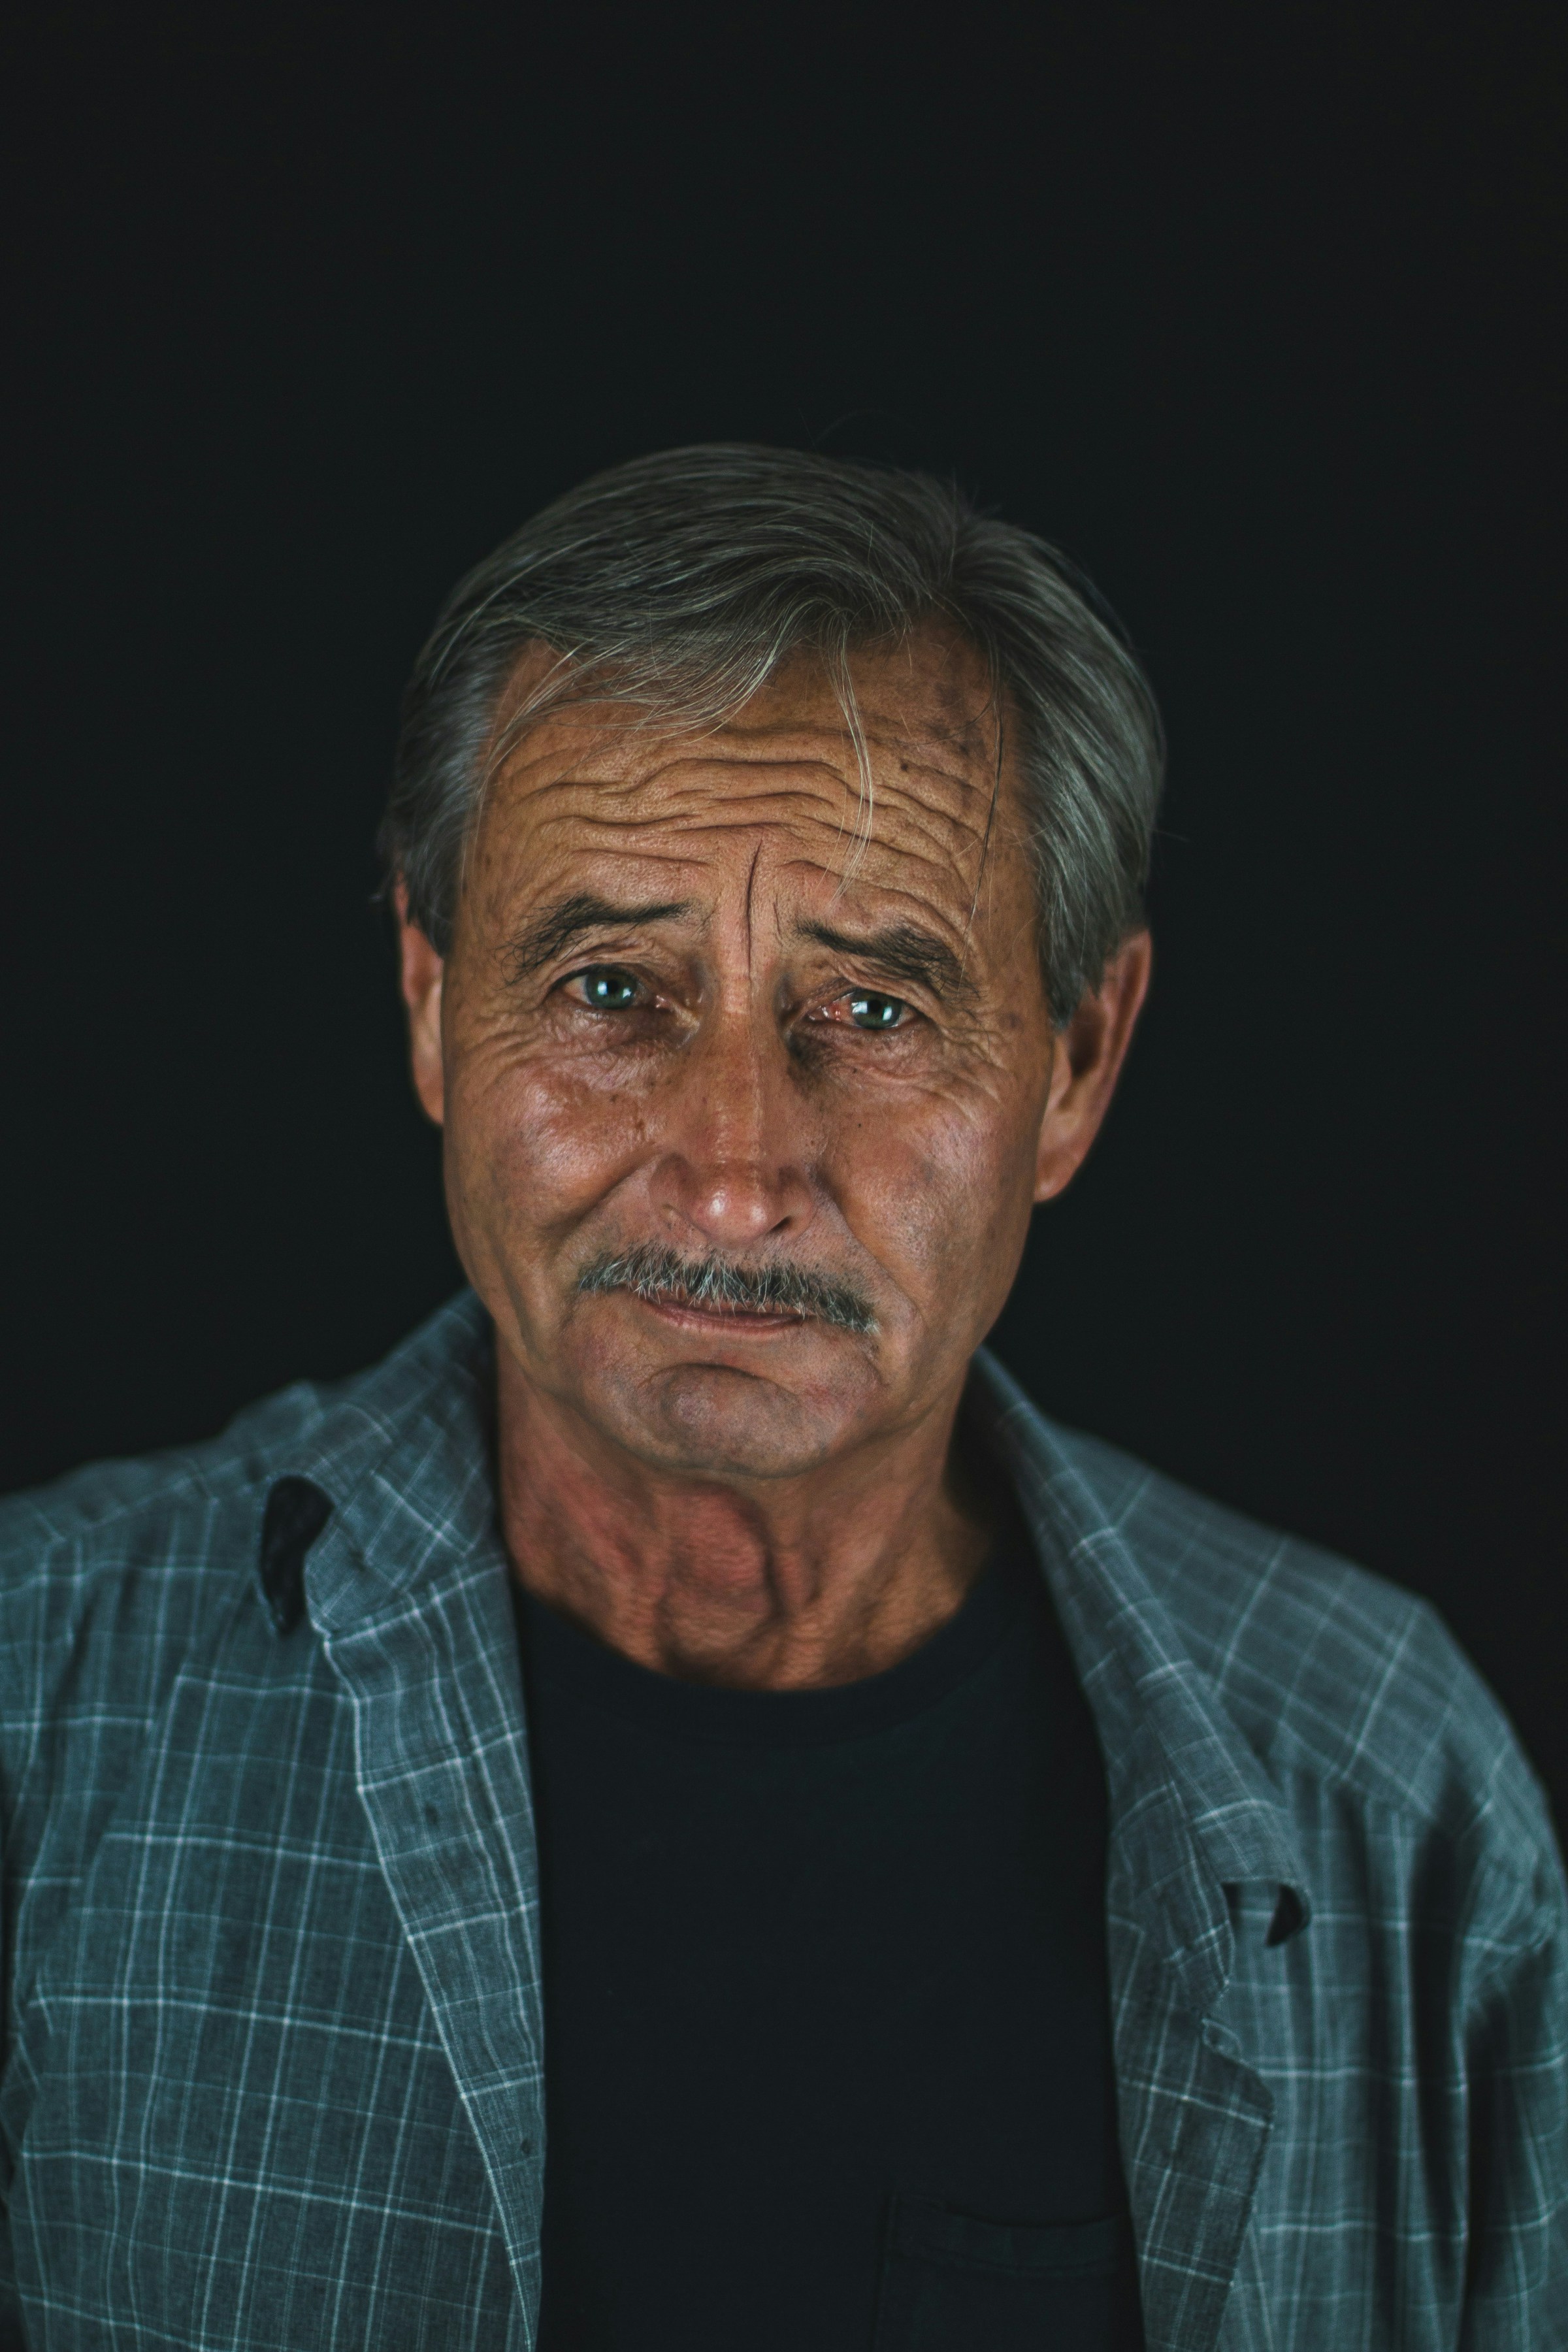 Un vieil homme souriant | Source : Unsplash